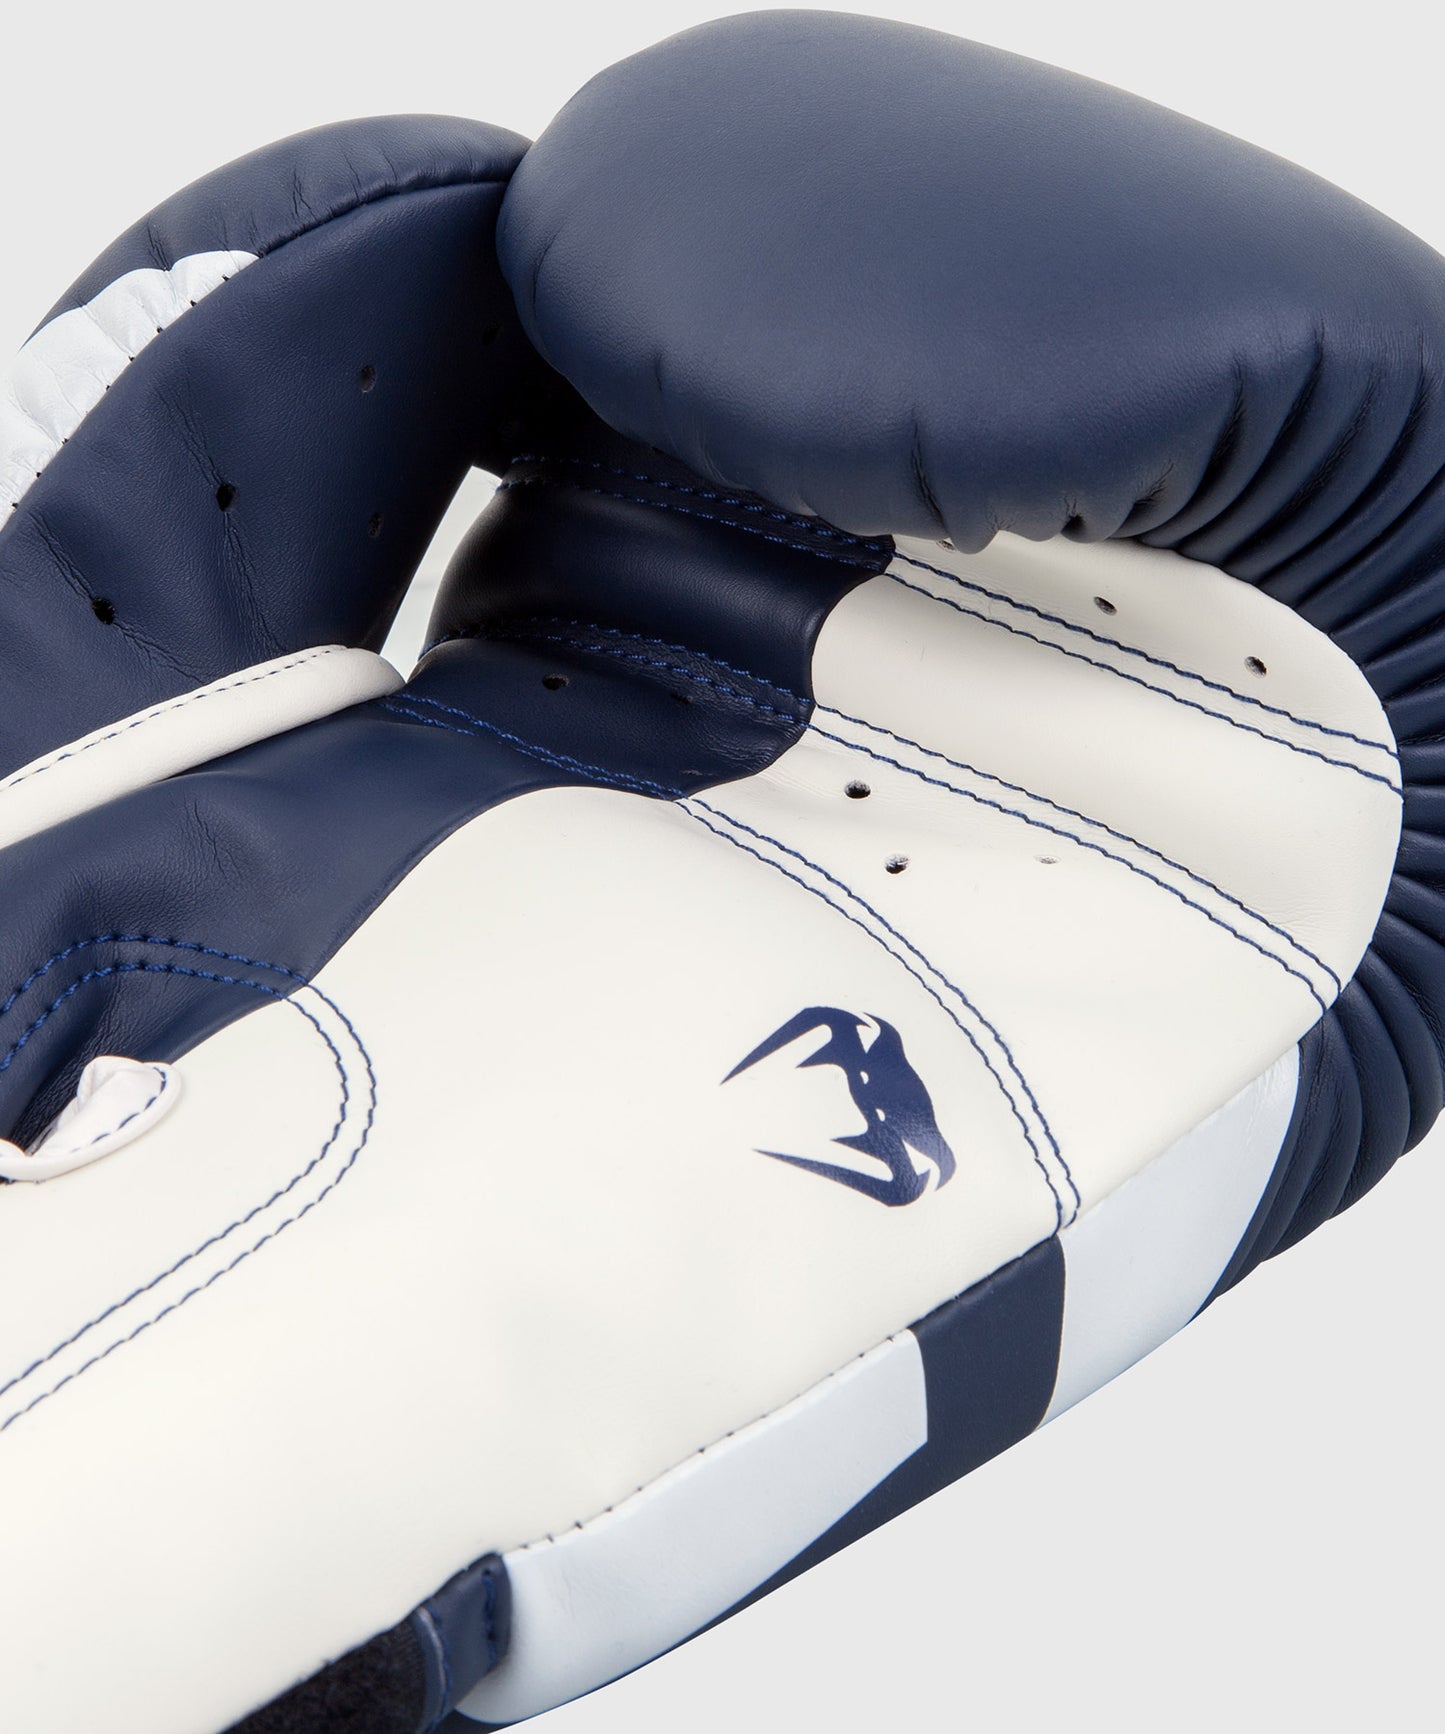 Bandes de Boxe Venum Kontact - 4.50 m - Blanc – Dragon Bleu